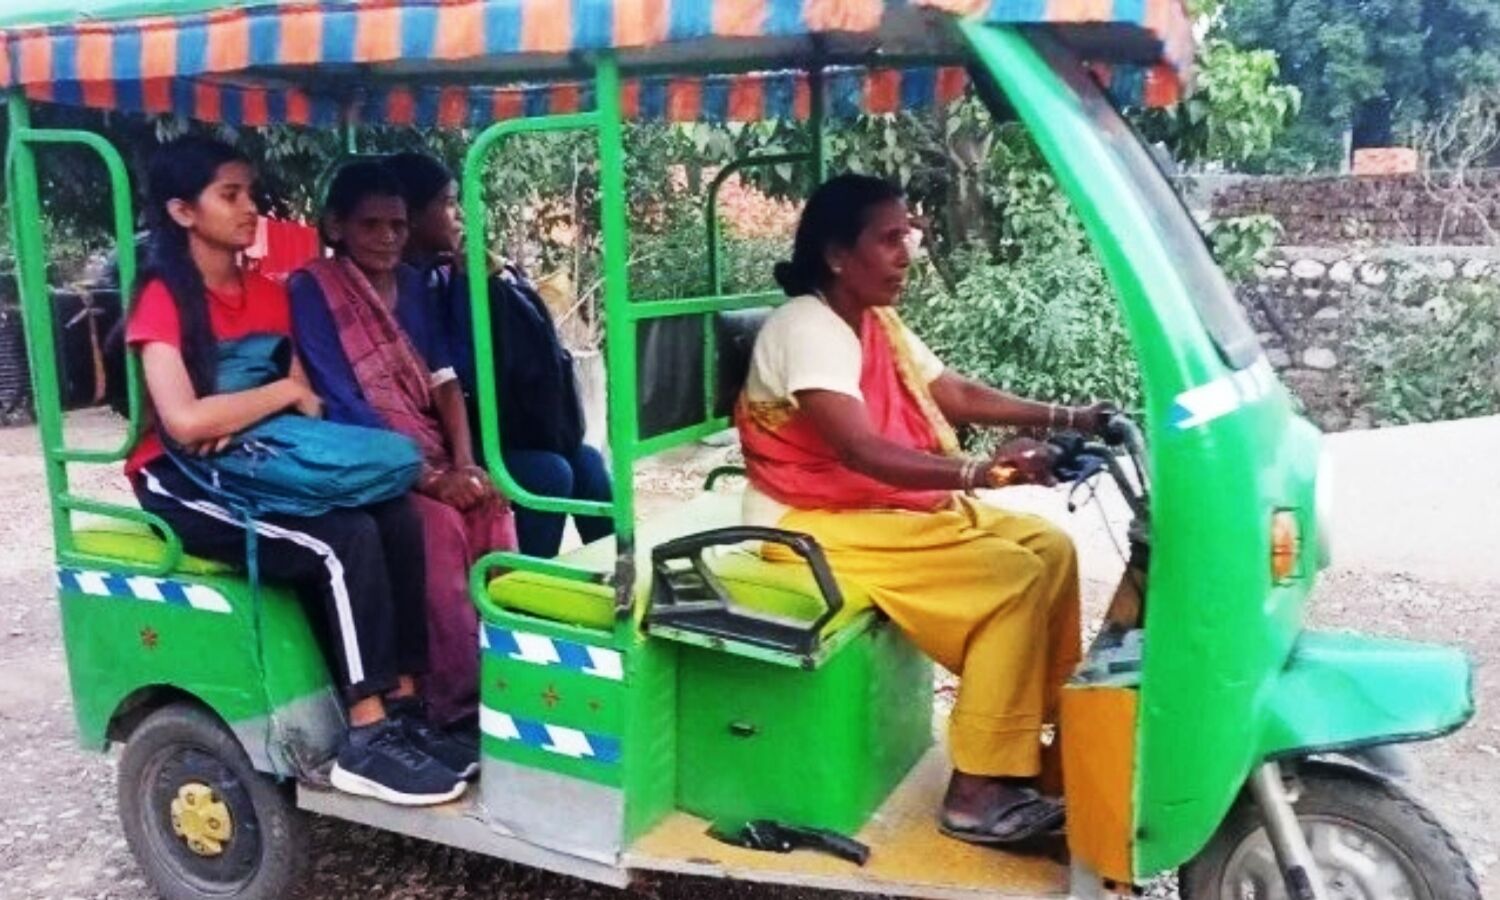 Champawat News : टनकपुर की गौरा देवी के जज्बे को सलाम, ई-रिक्शा चलाकर कर रहीं परिवार का गुजर-बसर